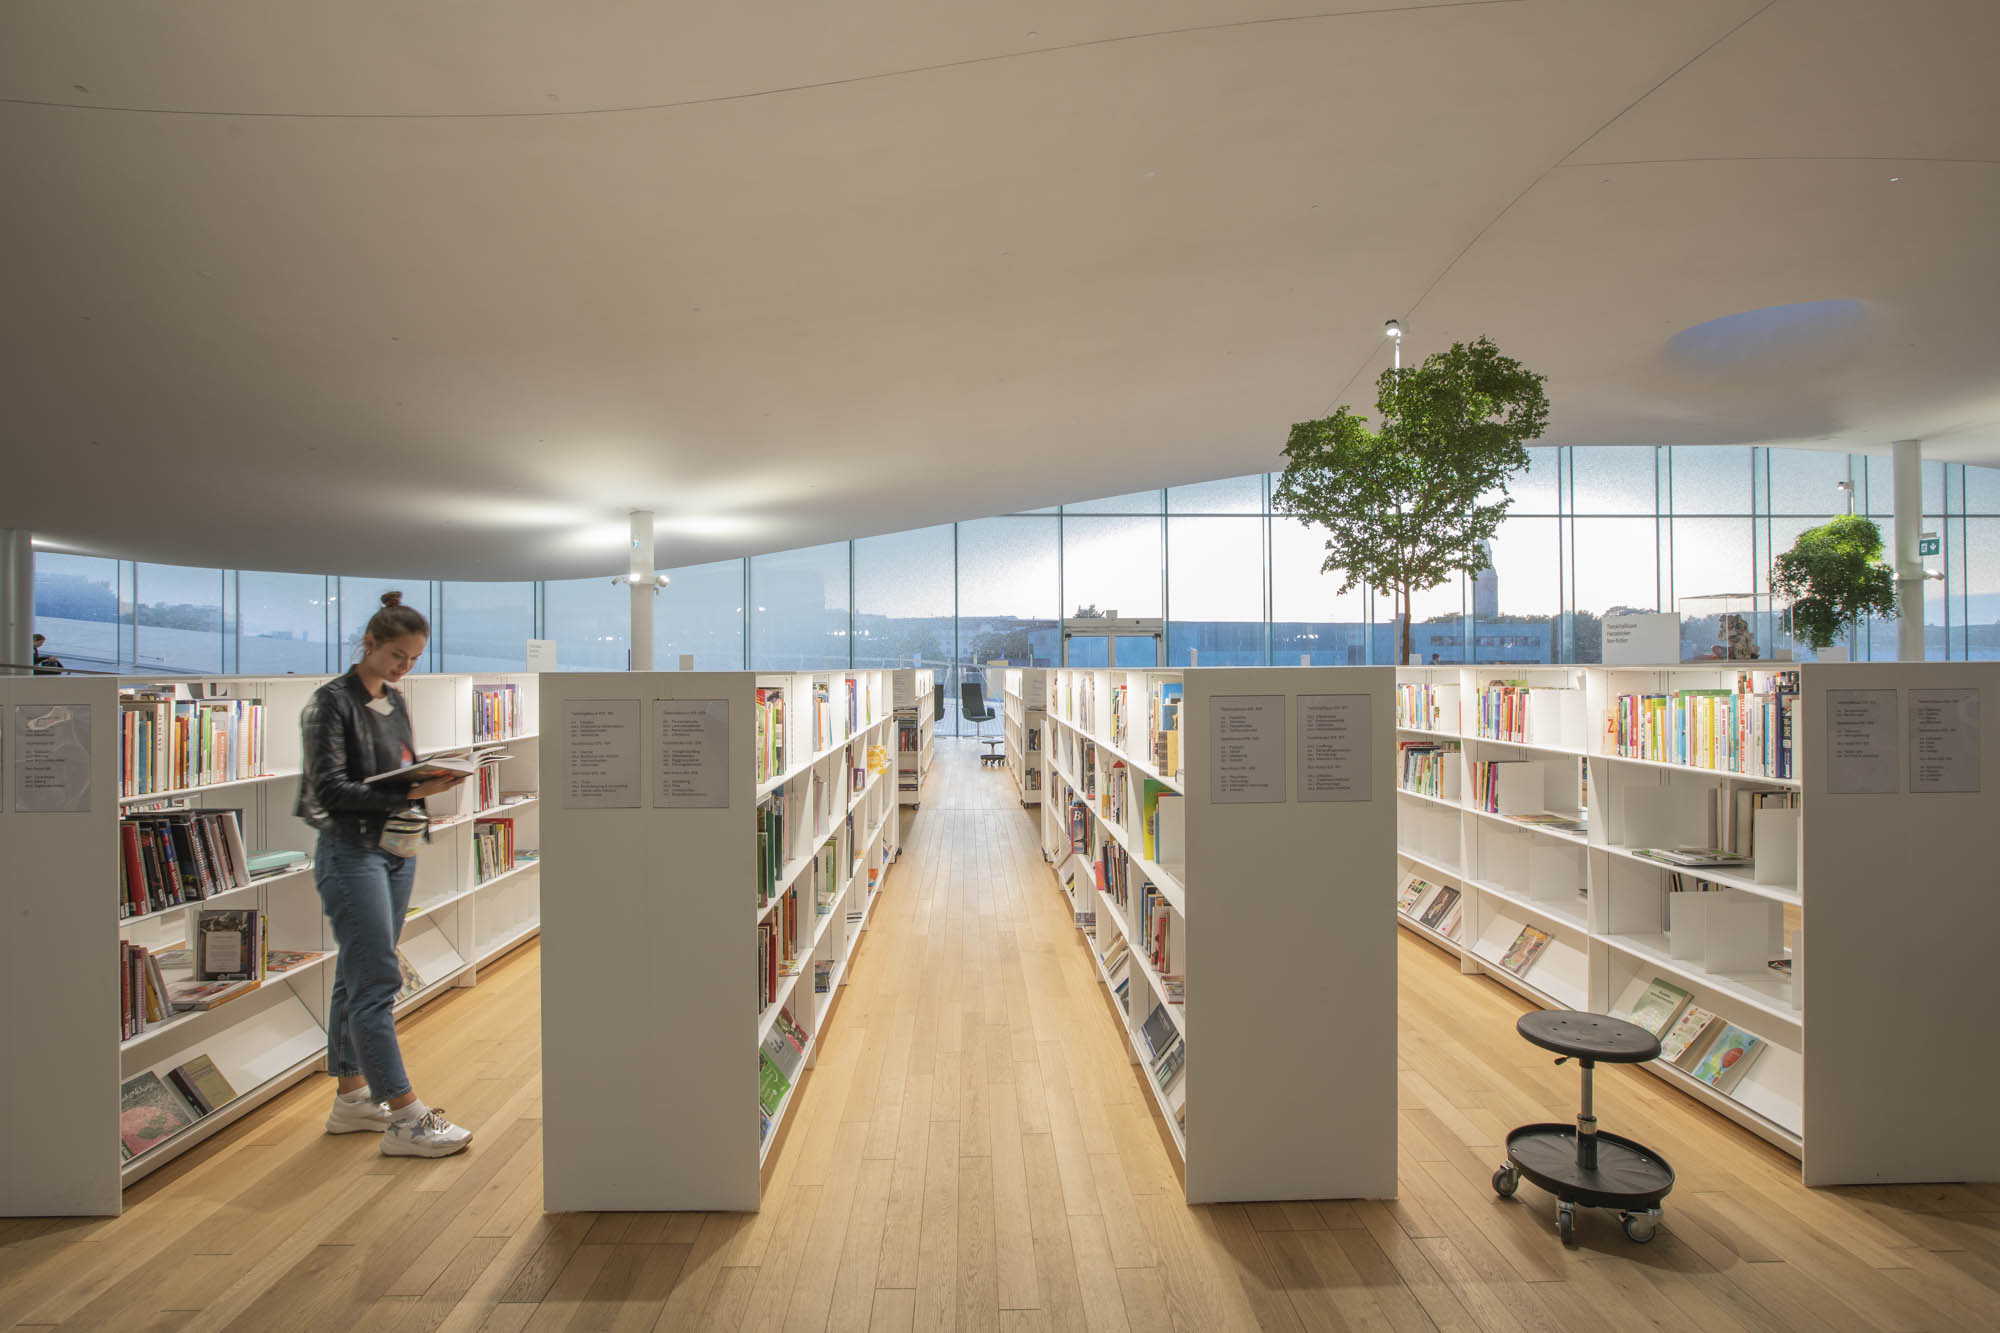 Finnland, Helsinki, Zentralbibliothek Oodi beherbergt rund 100.00 Bücher